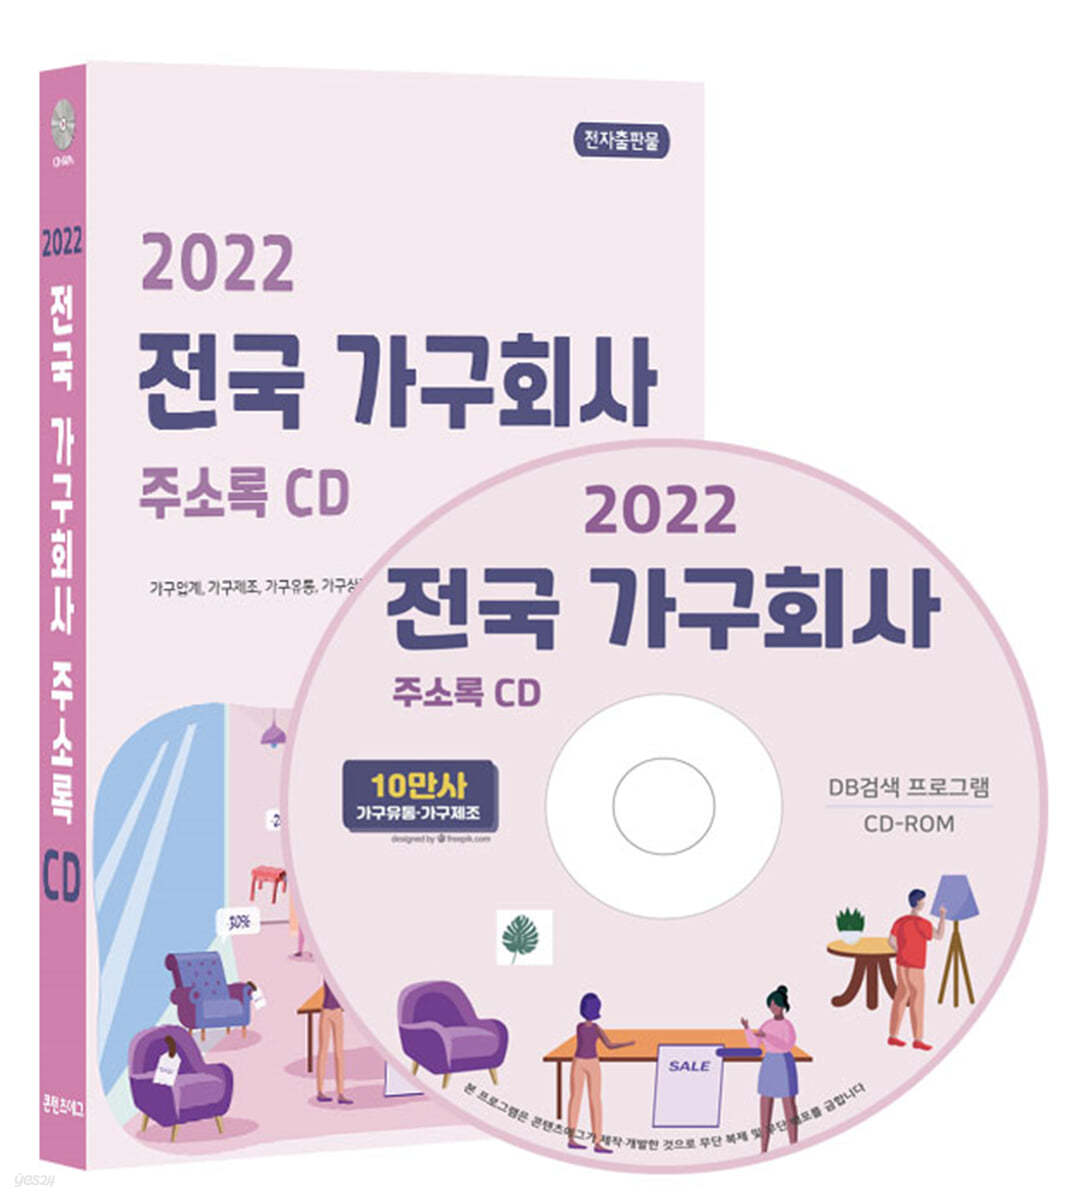 2022 전국 가구회사 주소록 CD